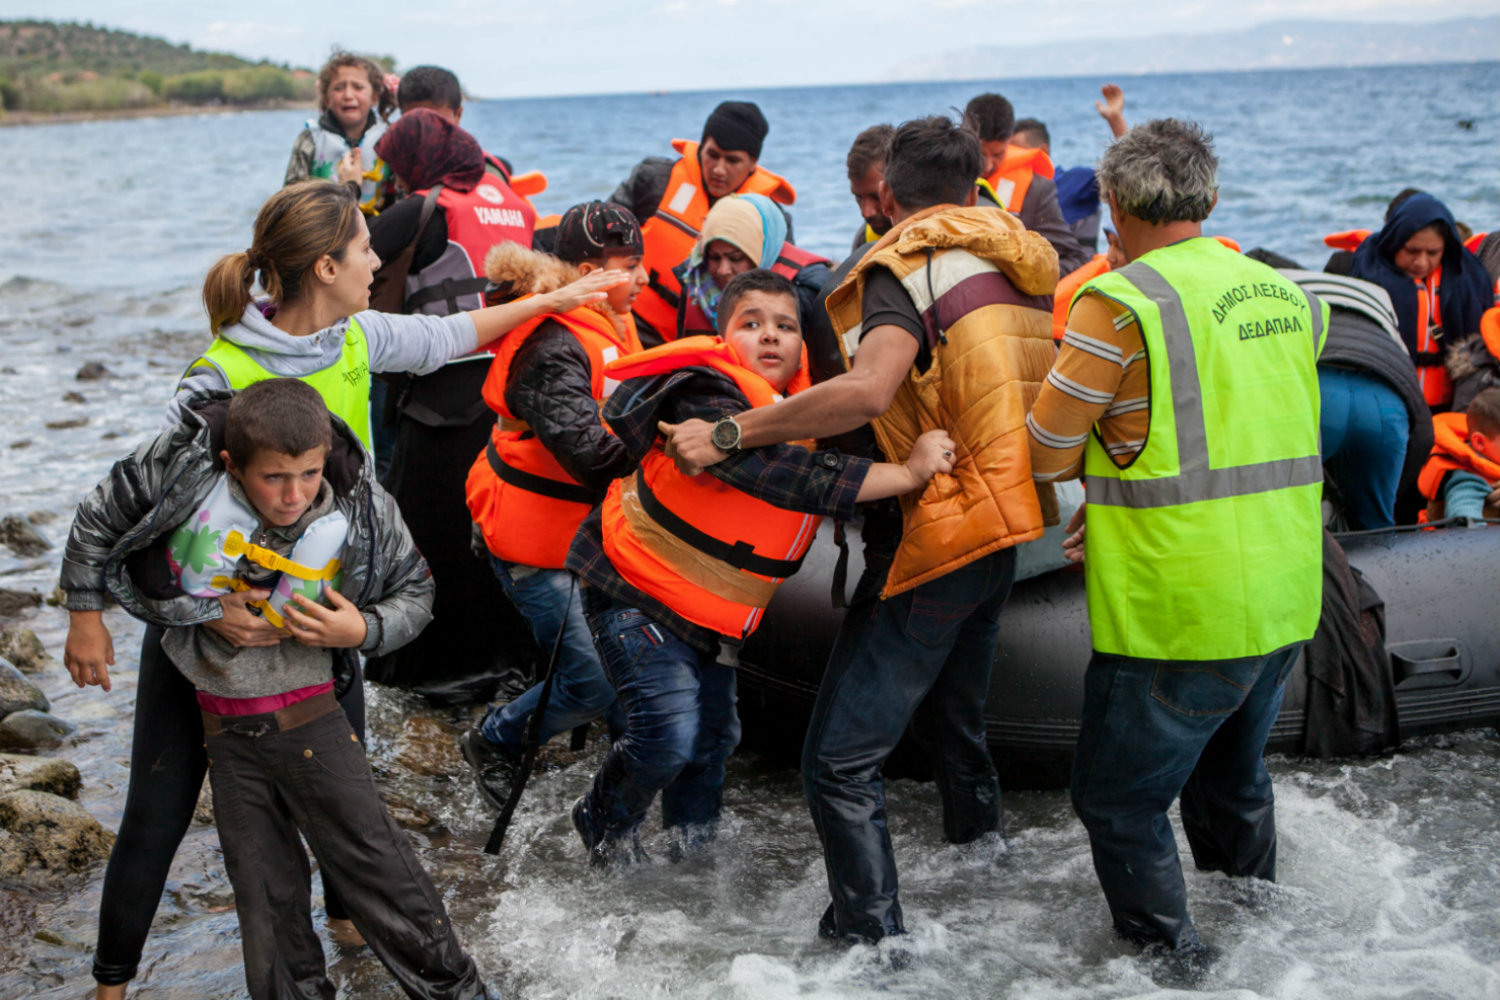 Uprchlíci vystupují z gumového člunu na řeckém ostrově Lesbos